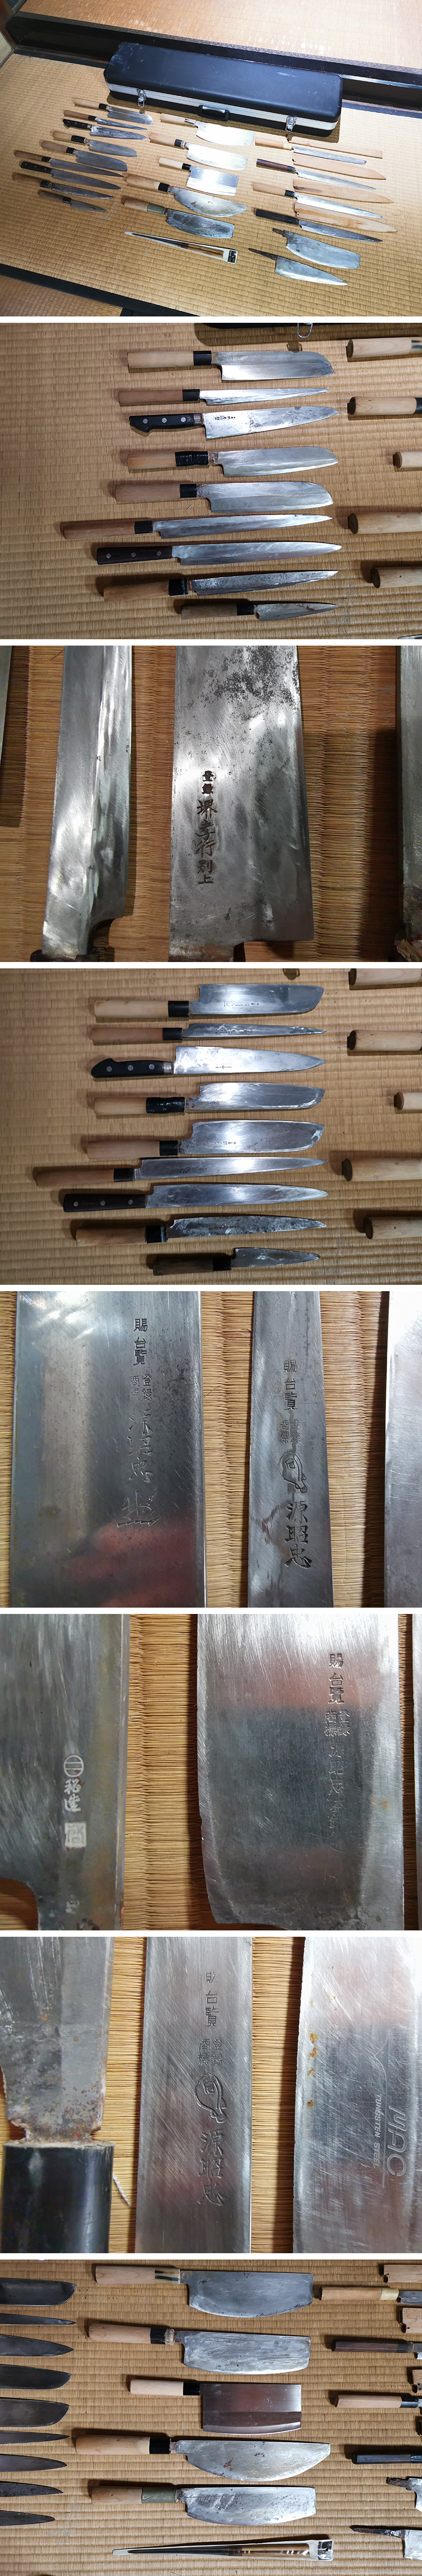 在庫NEWrb65ub49r　料理包丁　和包丁　最上本鍛錬 青鋼　堺兼政作 他　計20点　串 2点　ケース付　・調理器具・　検） 包丁　刃物　ナイフ 和包丁